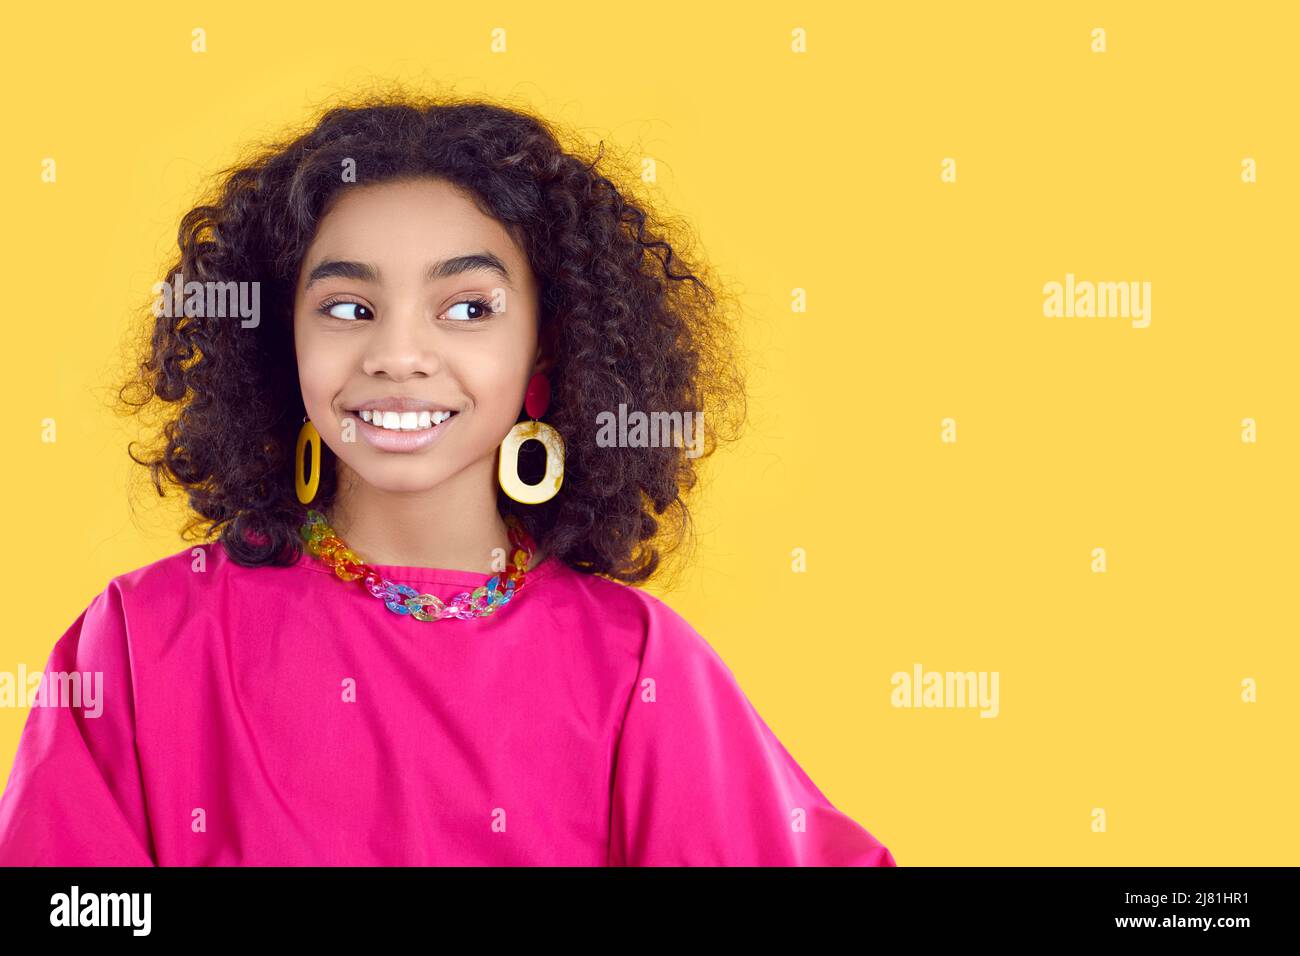 Belle fille africaine dans la tenue tendance regarde l'espace de copie sur fond jaune Banque D'Images